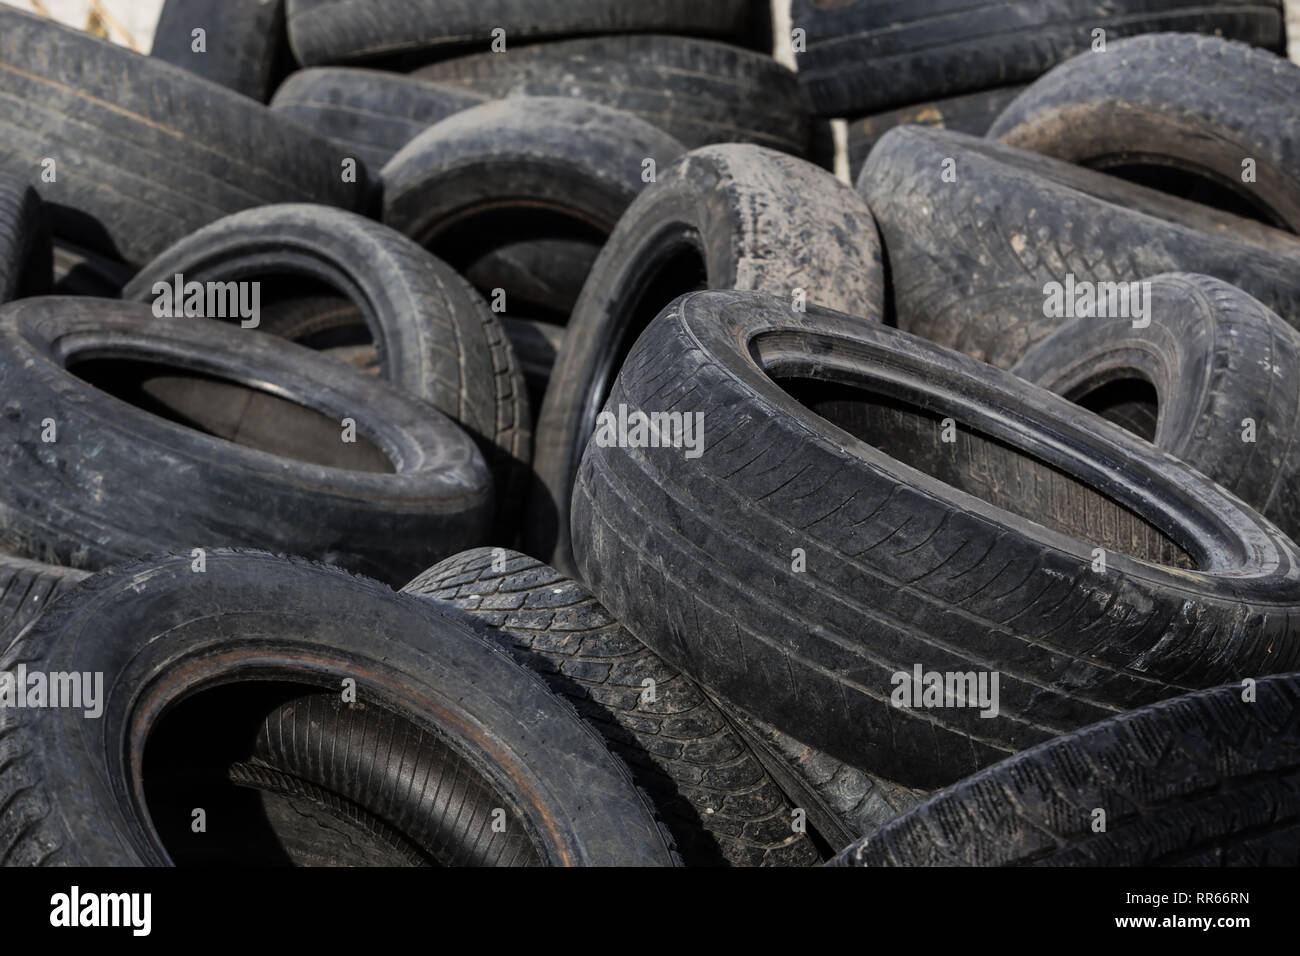 Les vieux pneus usés utilisés pour l'industrie de la gestion des déchets recyclage disposition Banque D'Images